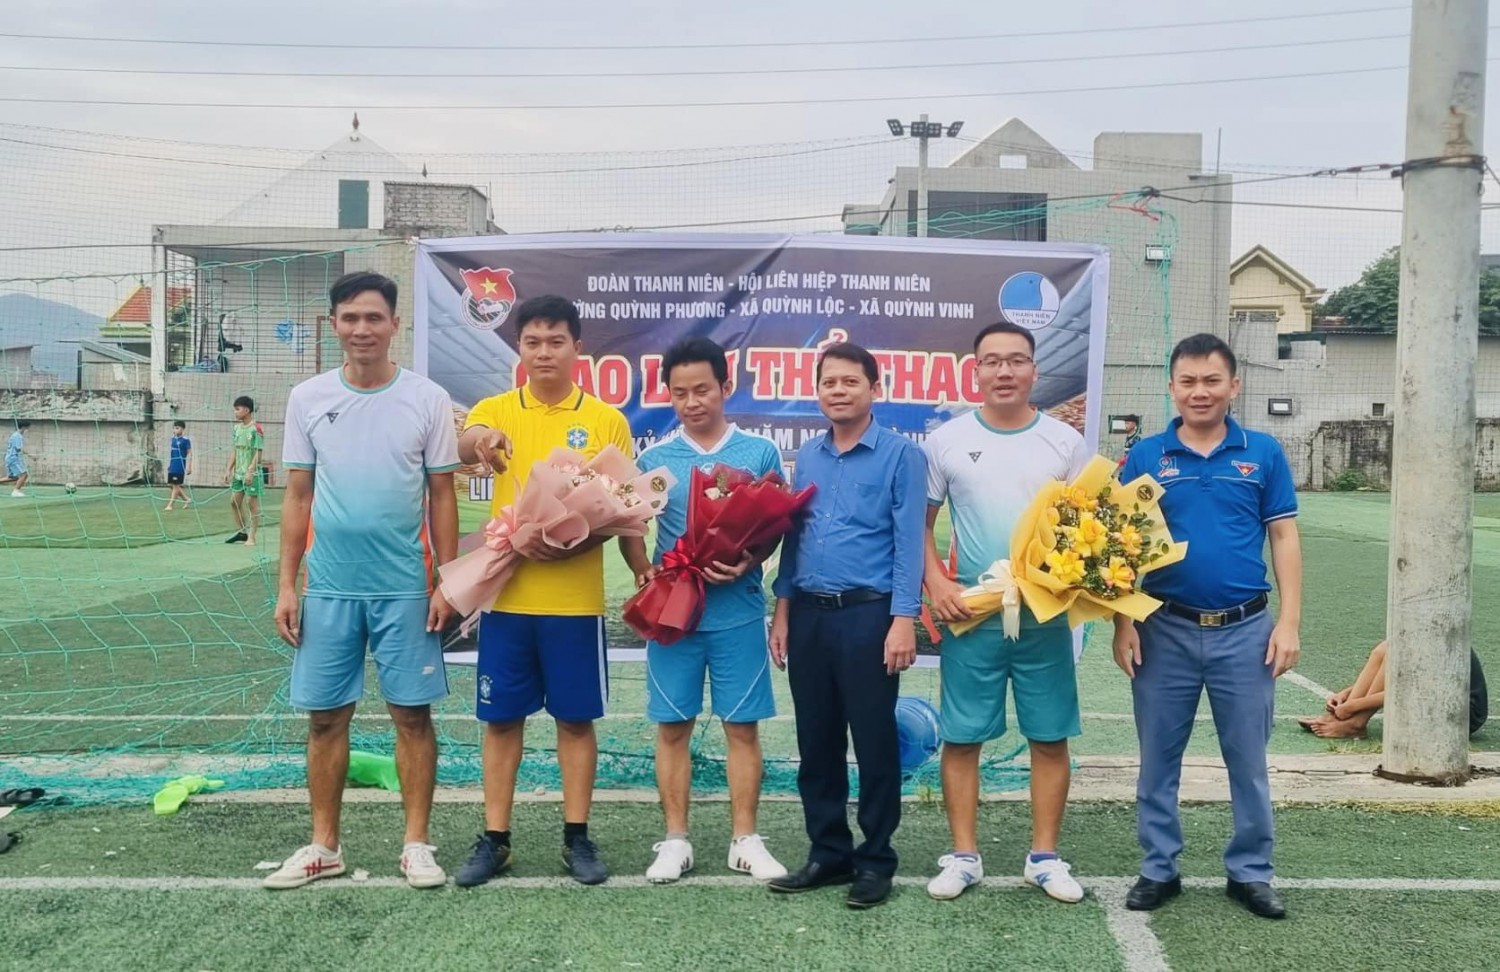 Giao lưu bóng đá chào mừng kỷ niệm 66 năm ngày thành Hội Liên hiệp Thanh niên Việt Nam (15/10/1956-15/10/2022)